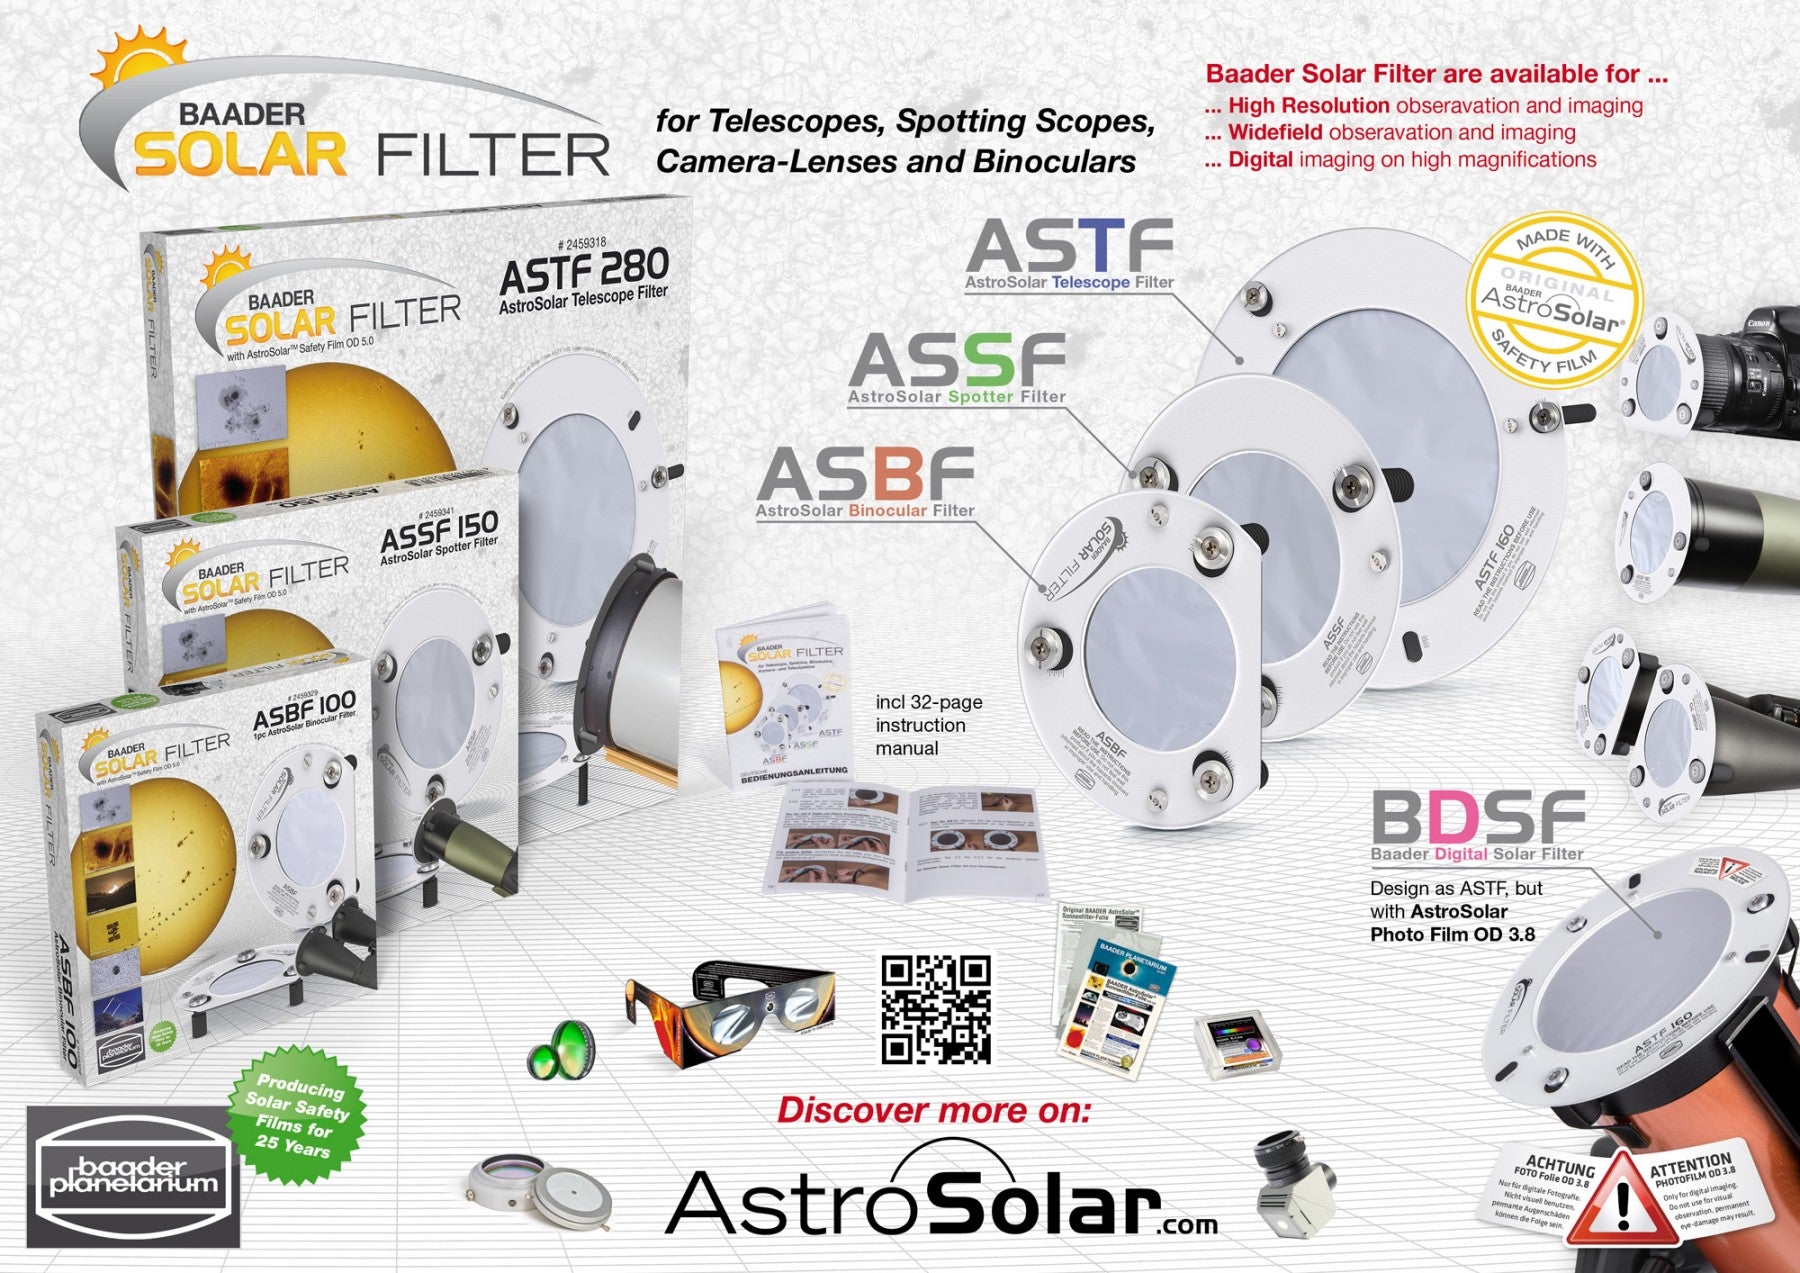 ASTF: AstroSolar Telescope Filters OD 5.0